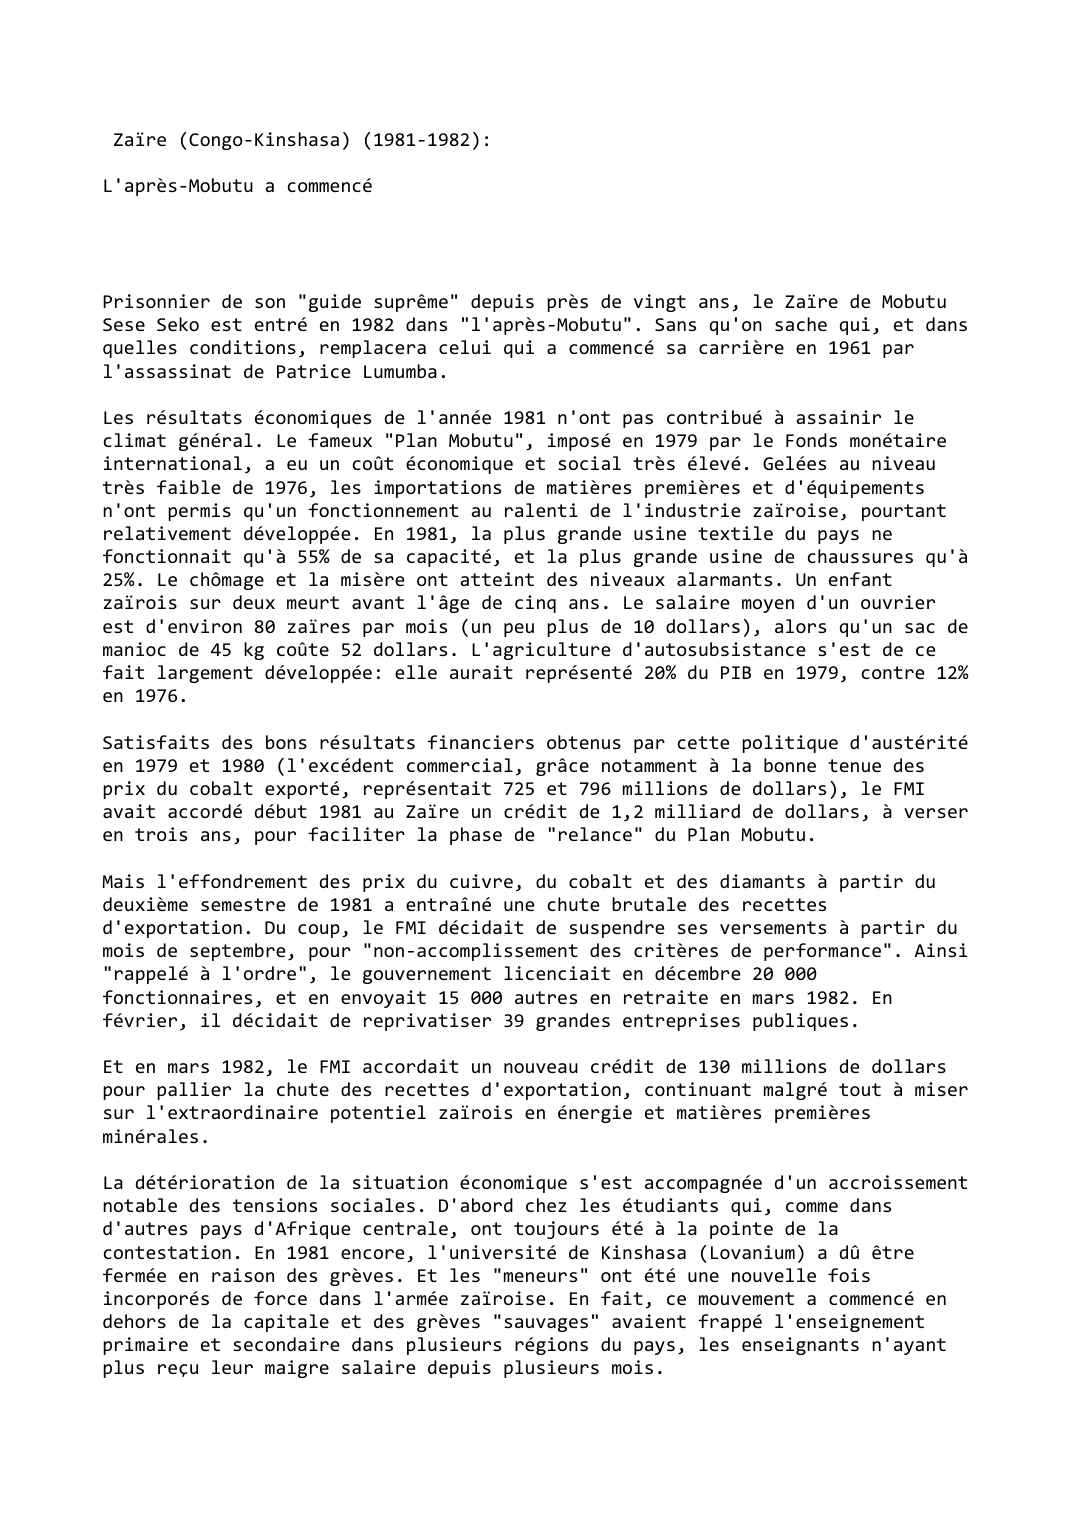 Prévisualisation du document Zaïre (Congo-Kinshasa) (1981-1982):

L'après-Mobutu a commencé